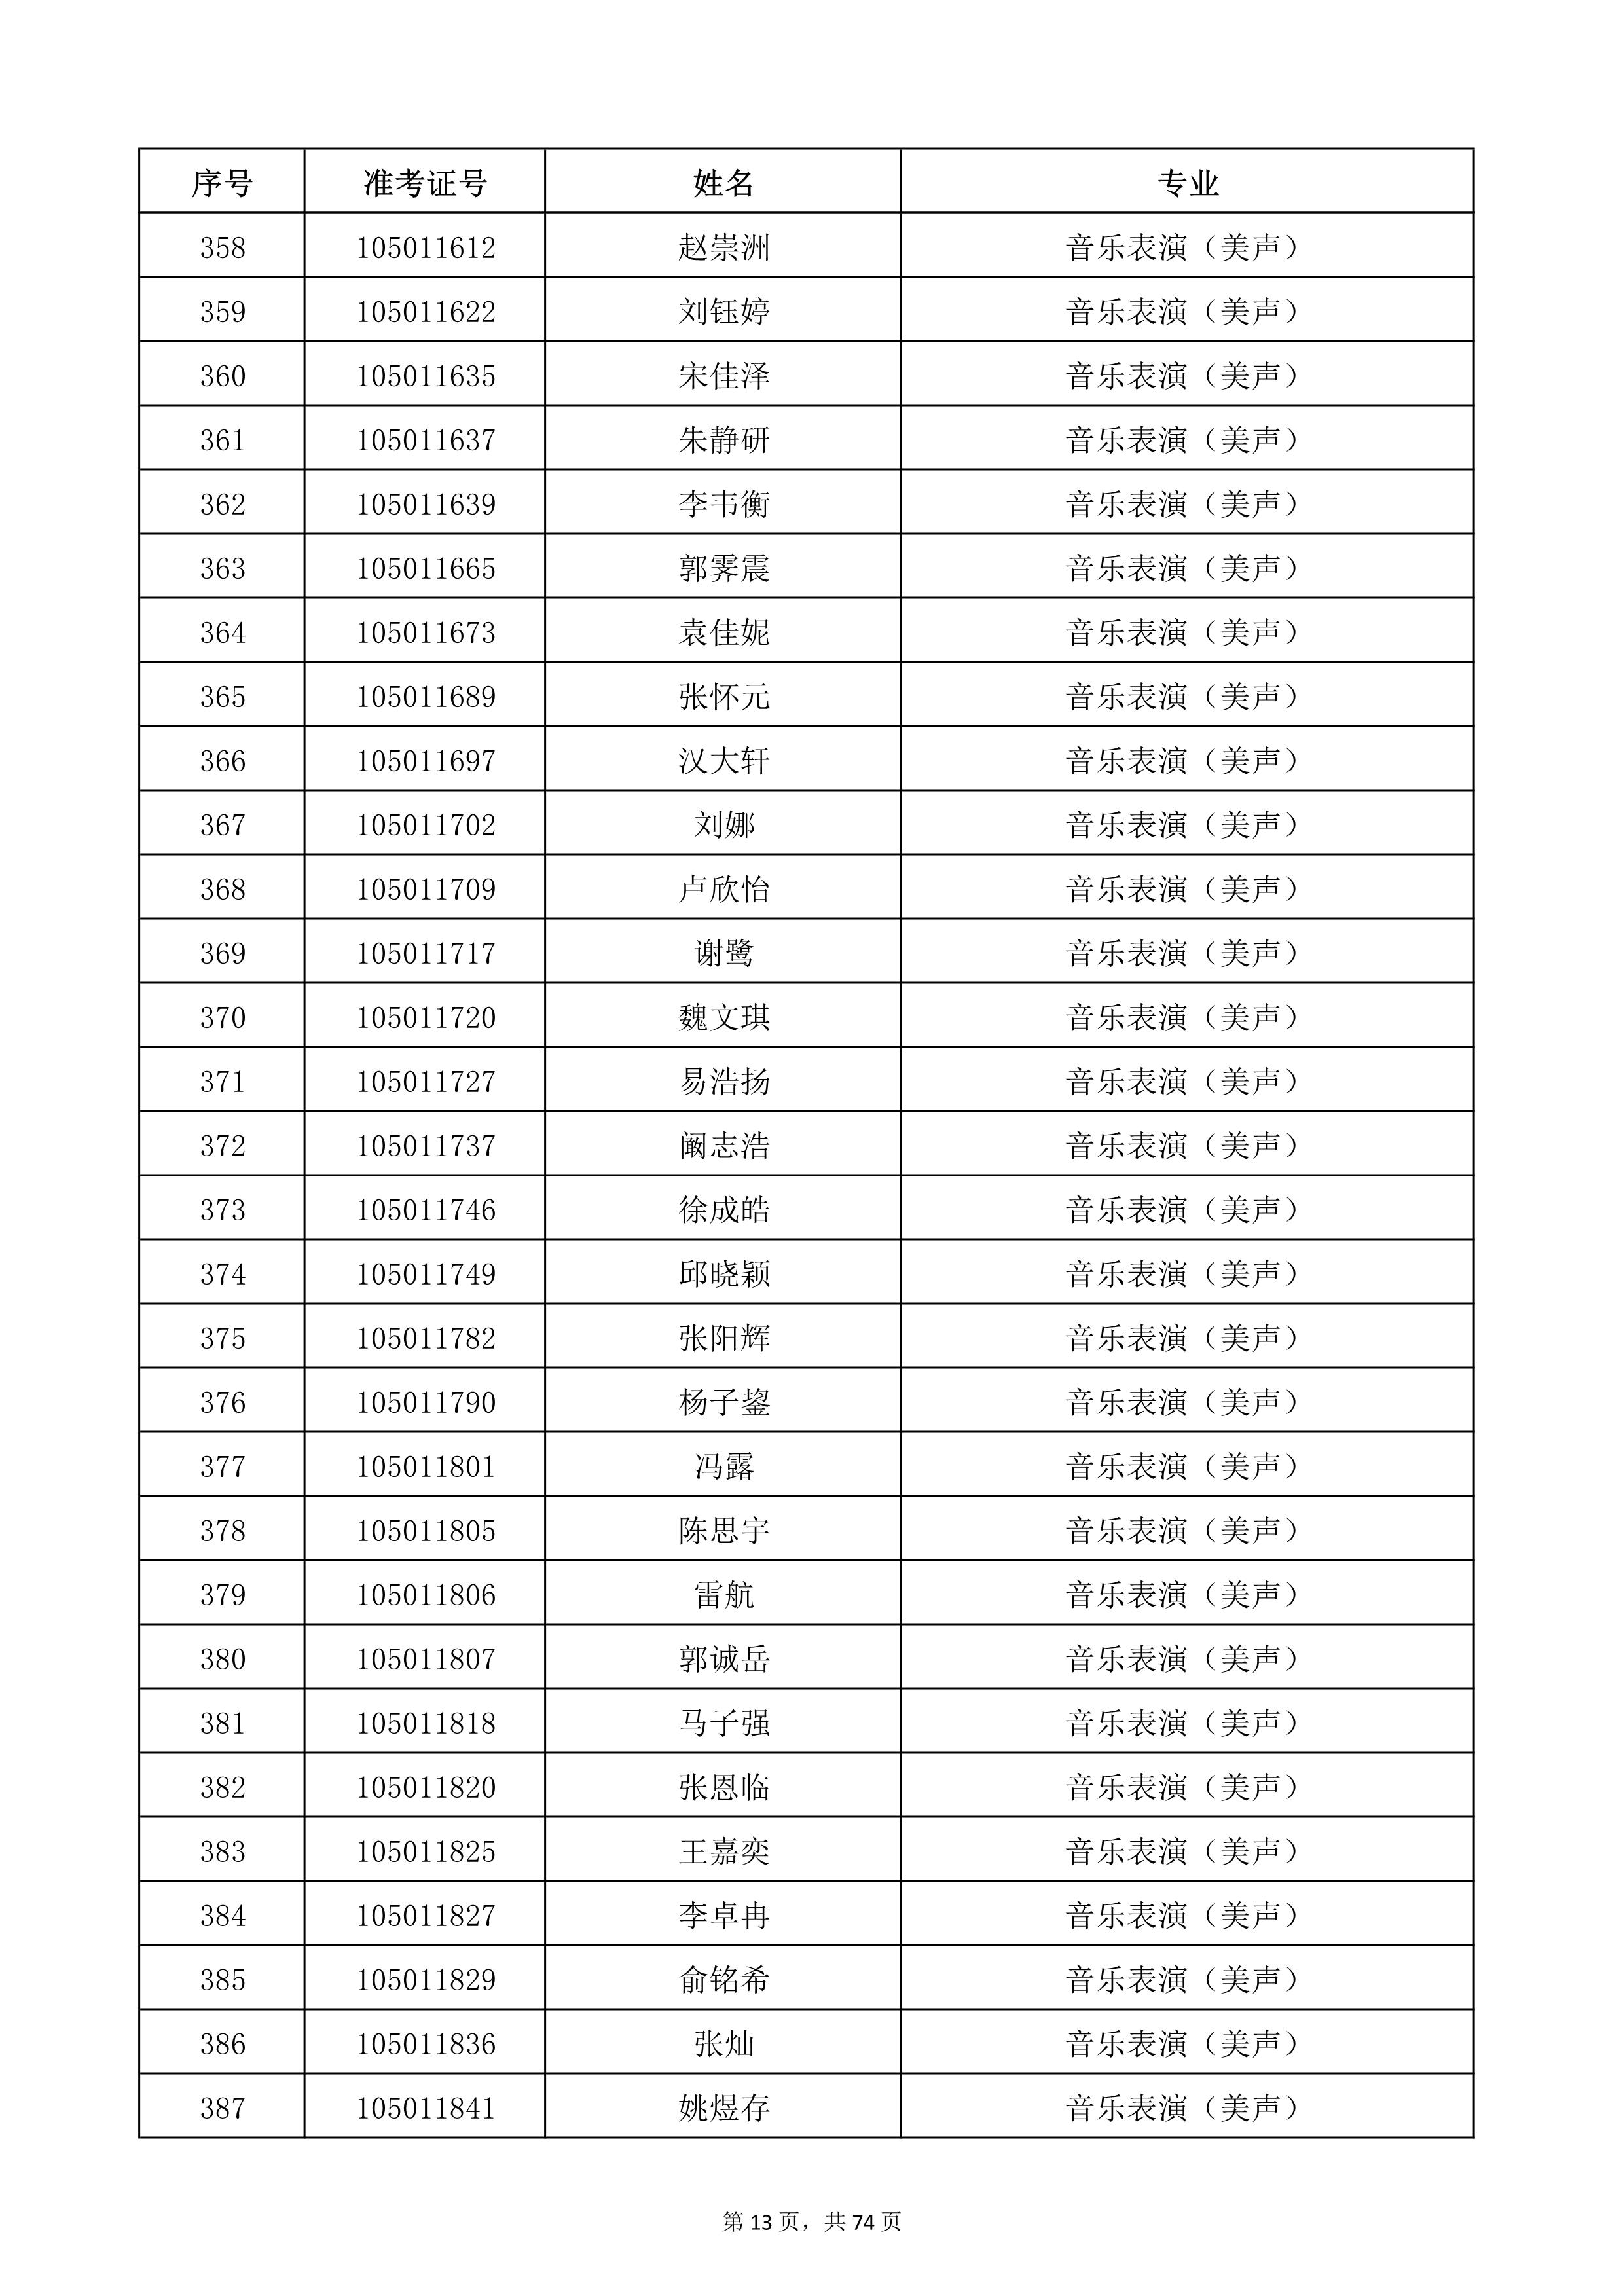 天津音乐学院2022年本科招生考试复试名单_13.jpg